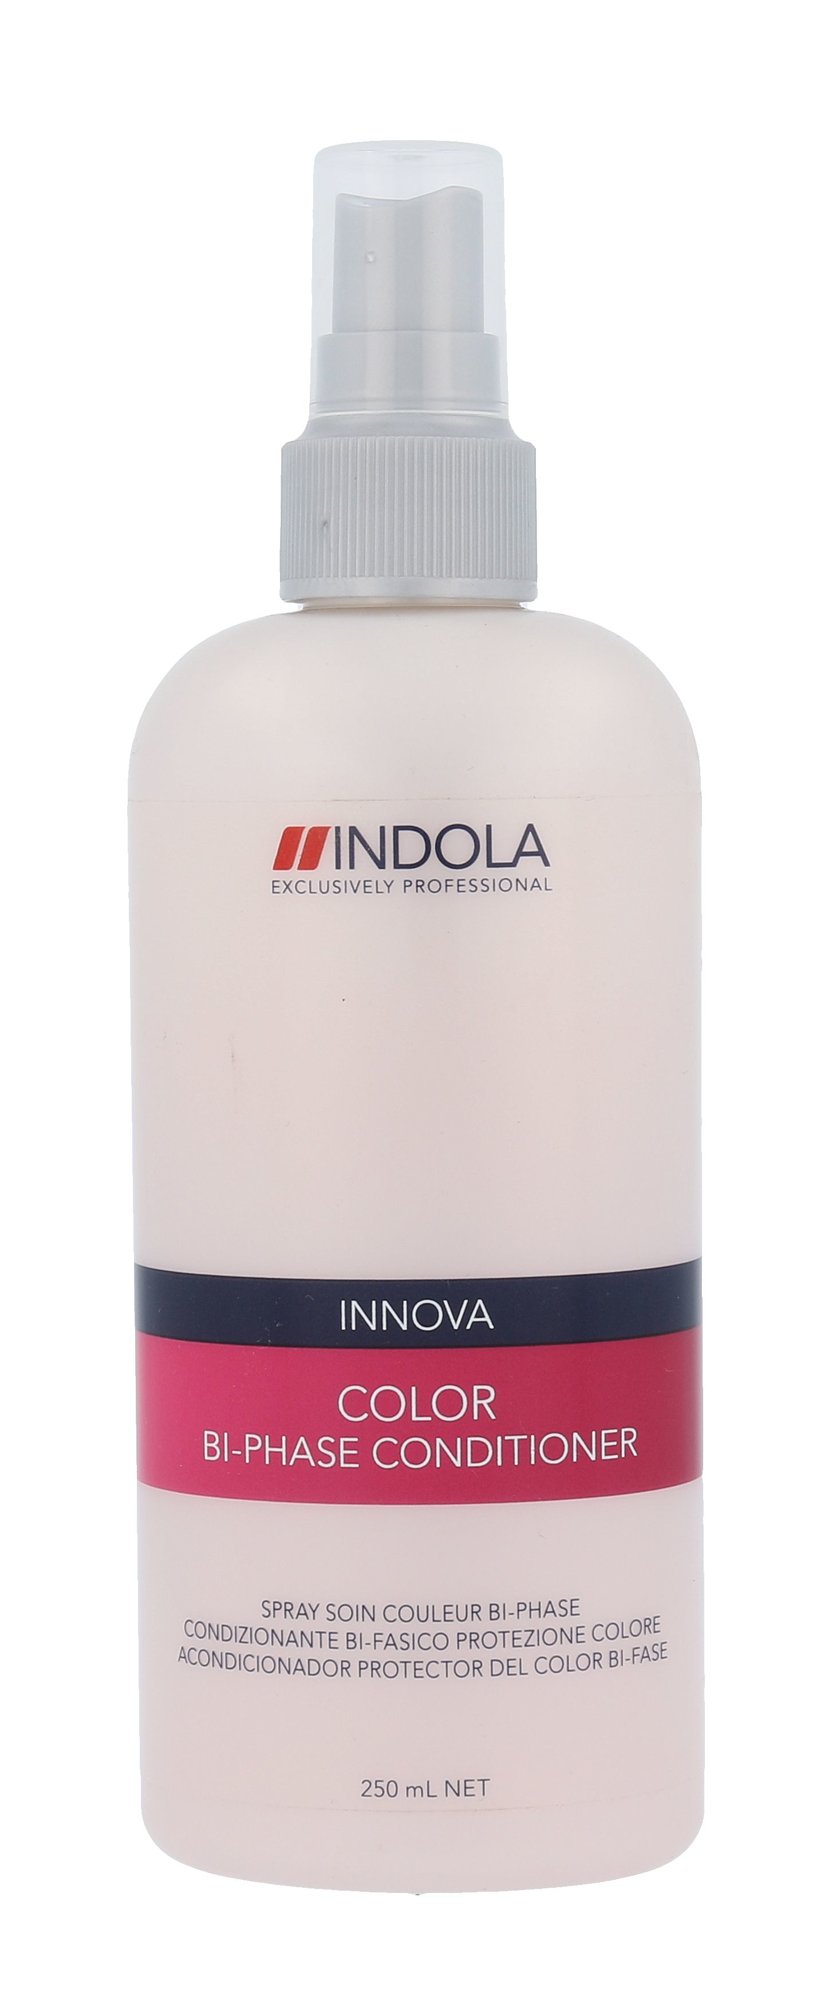 Indola Innova Color Bi Phase 250ml kondicionierius